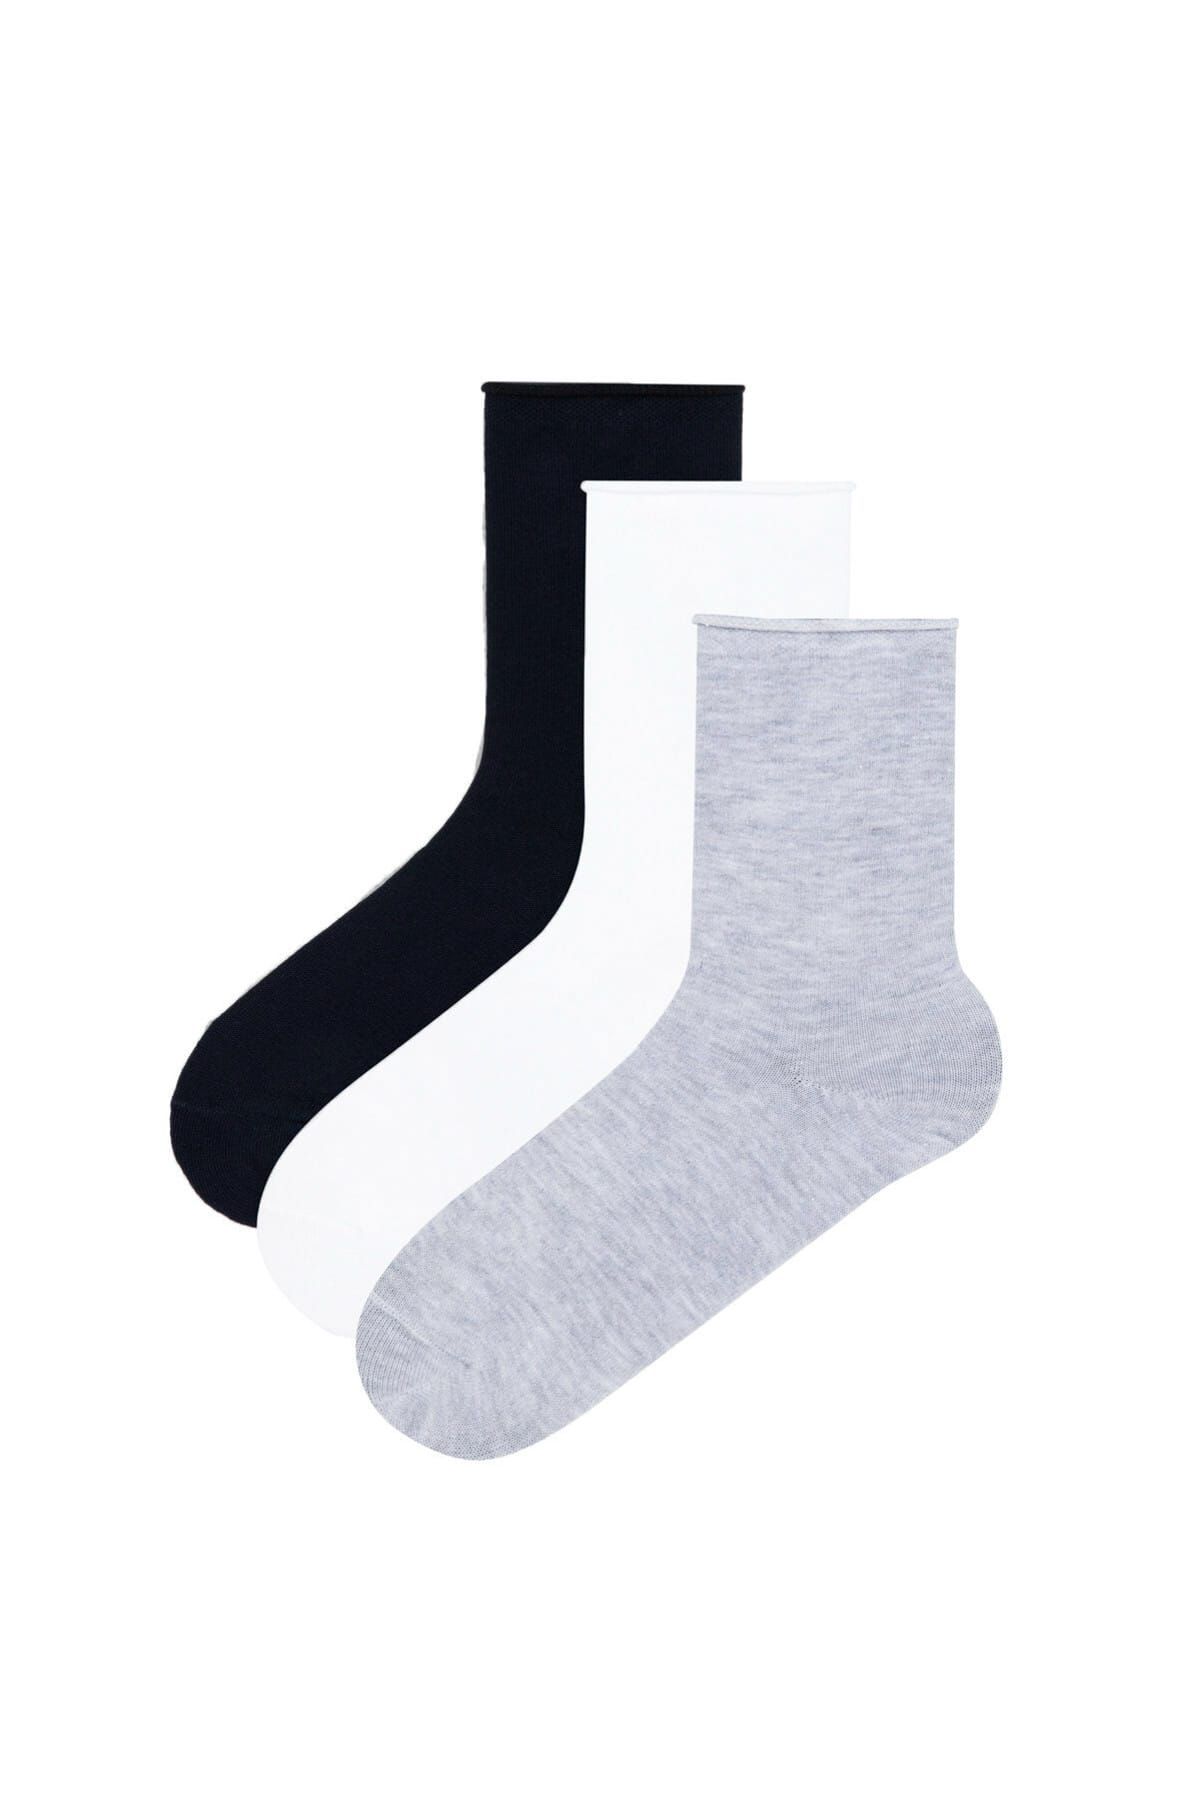 Penti Kız Çocuk Basic 3Lü Soket Çorap